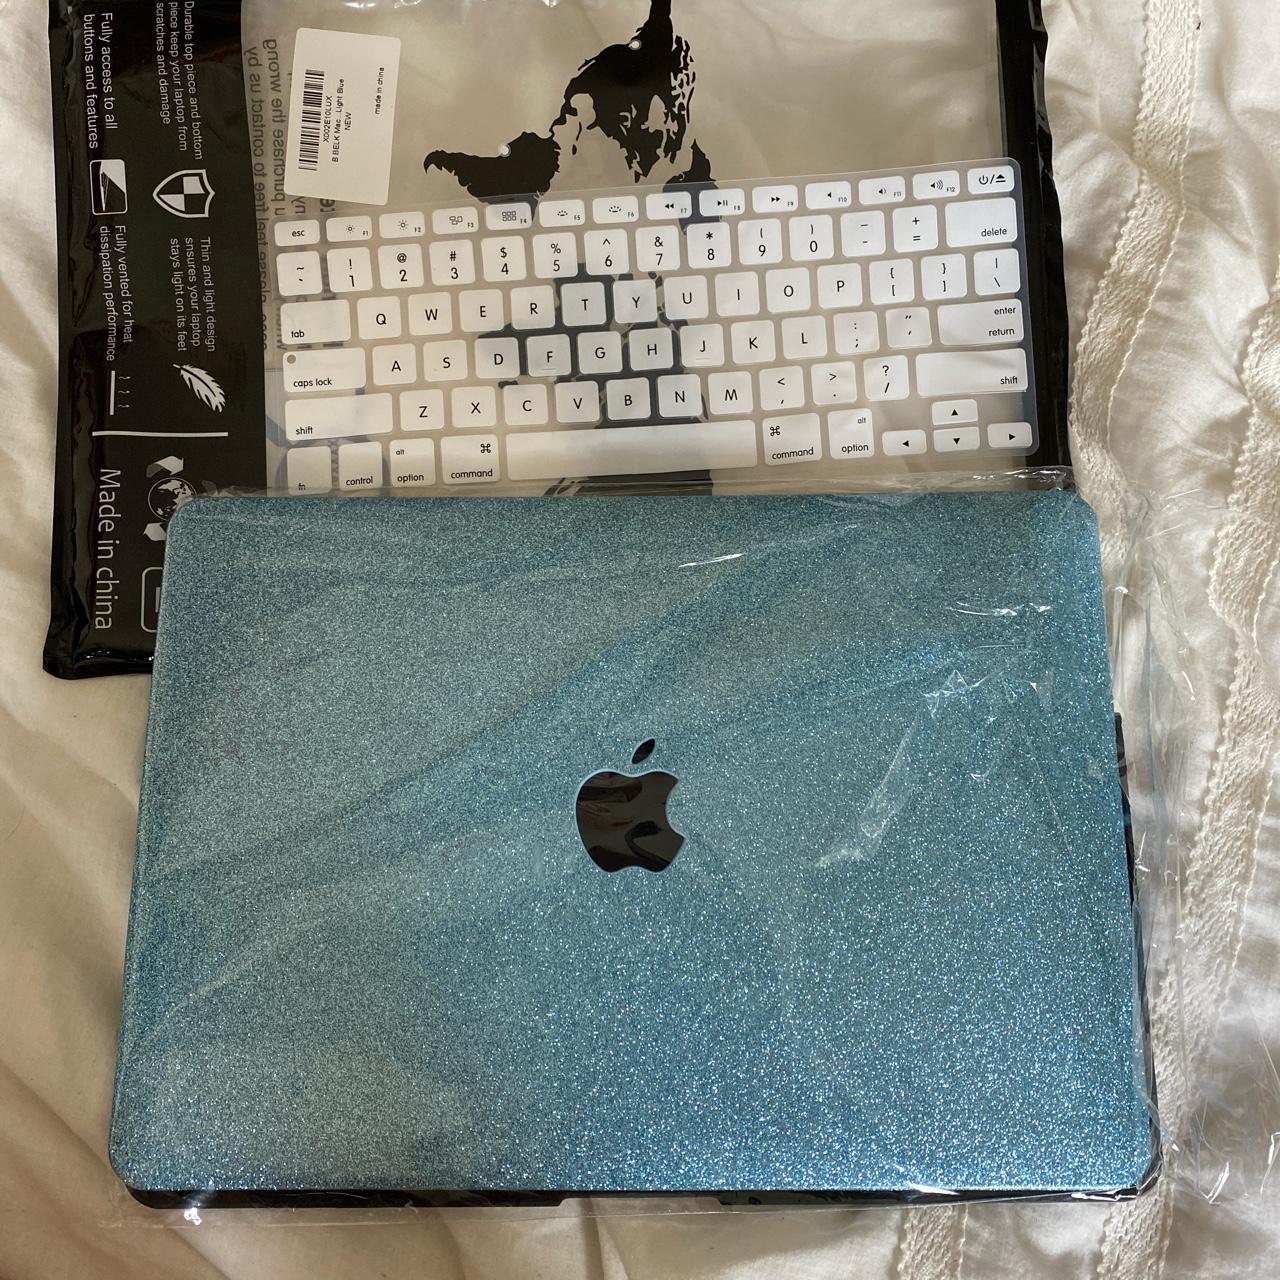 Silver Glitter MacBook Case